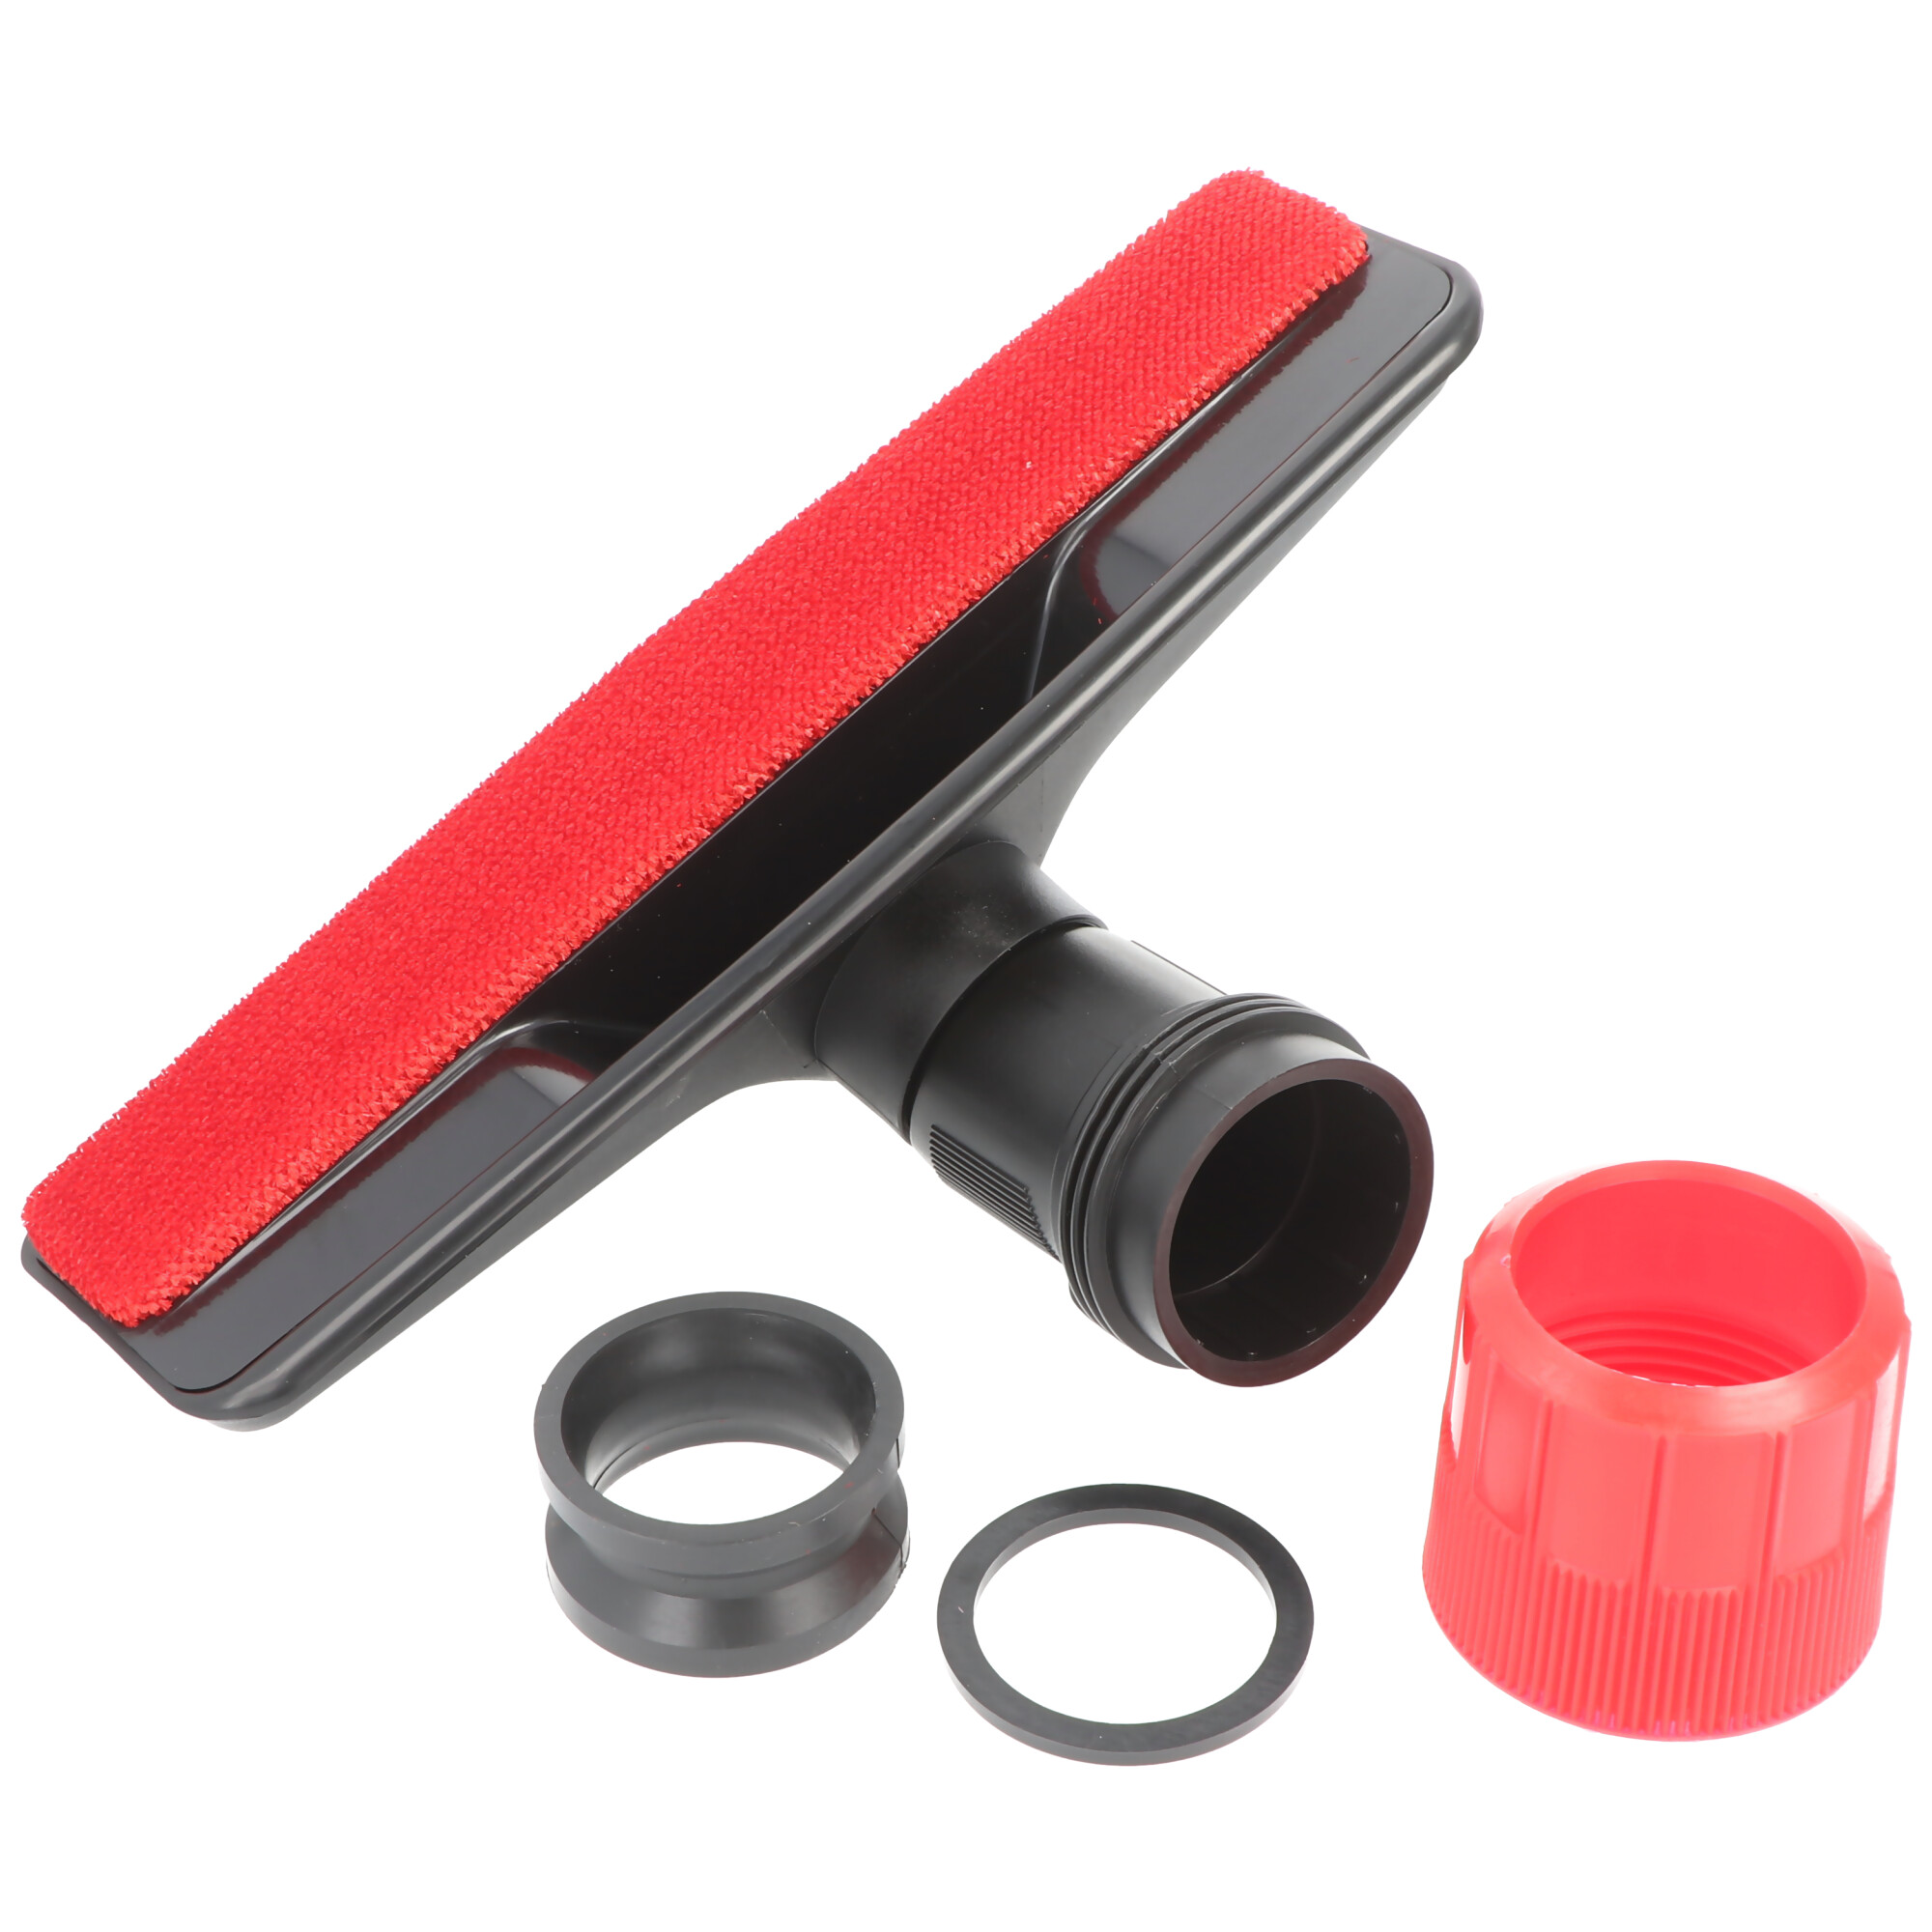 Tierhaar-Bodendüse für Staubsauger mit Rundanschluss 30mm, 32mm, 35mm, 37mm rot schwarz